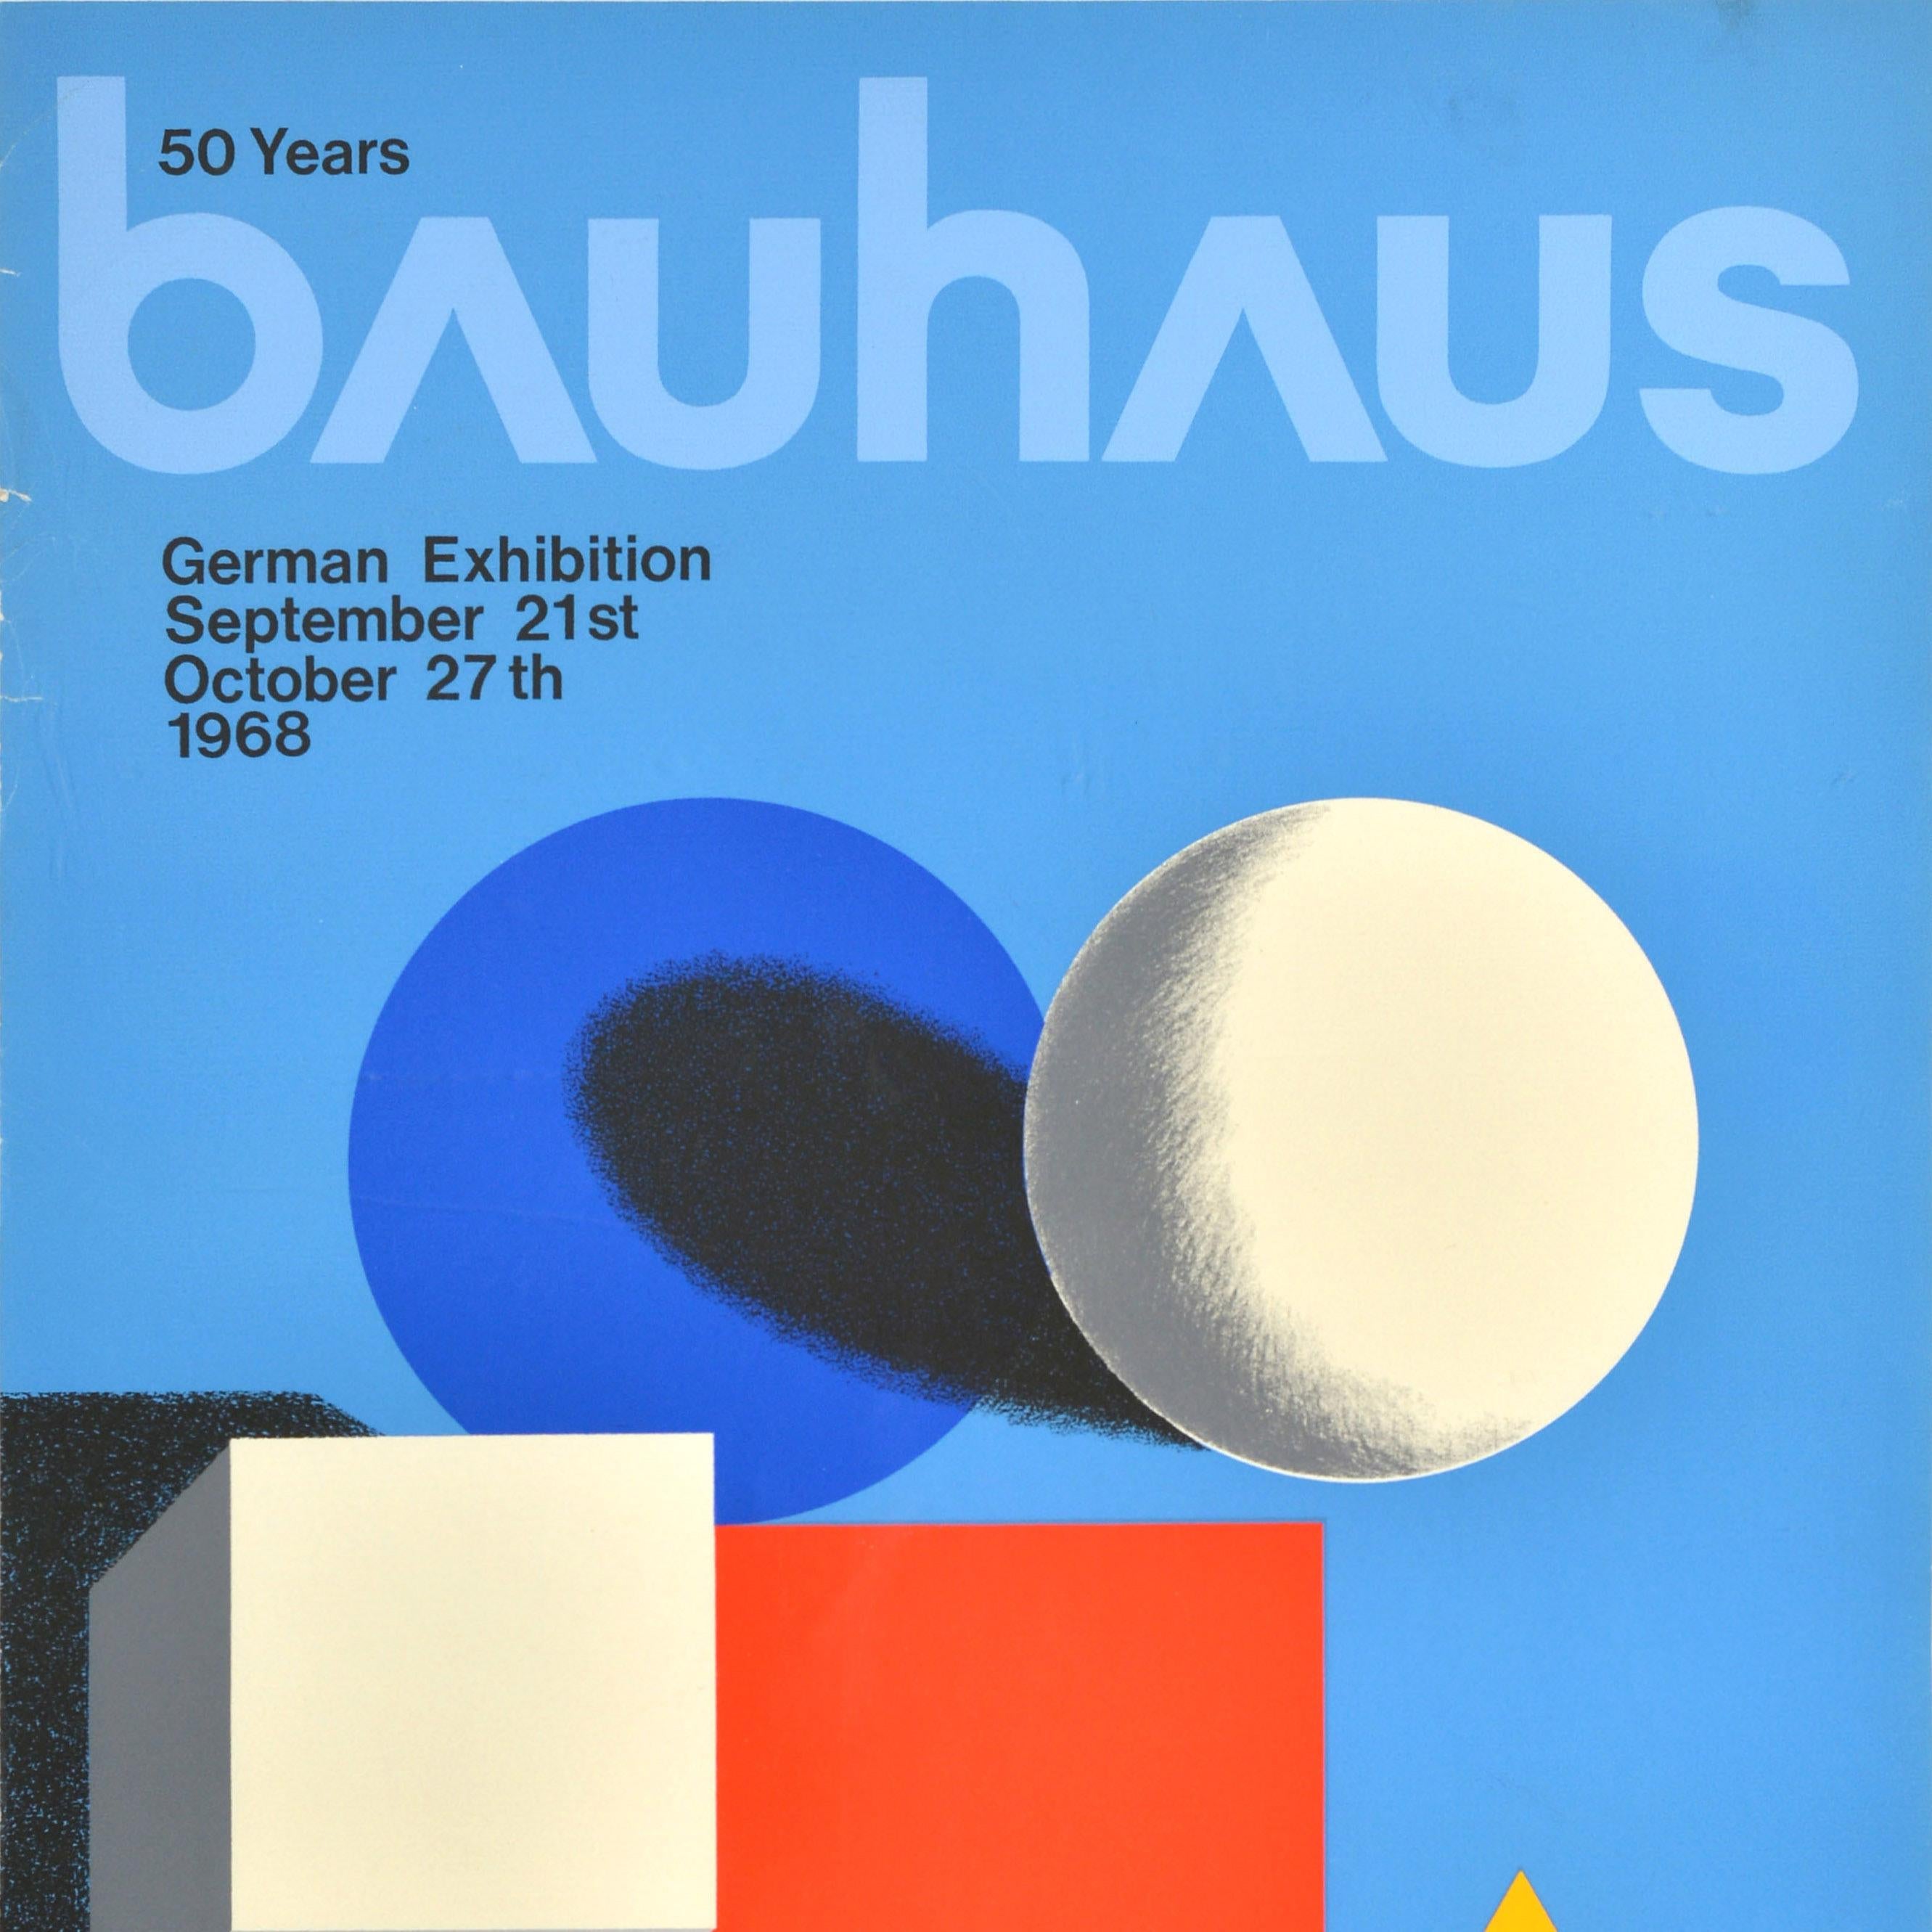 Affiche publicitaire originale d'époque pour l'exposition allemande 50 Years Bauhaus qui s'est tenue du 21 septembre au 27 octobre 1968 à la Royal Academy of Arts Piccadilly London W1. Cette affiche présente une composition minimaliste comprenant un